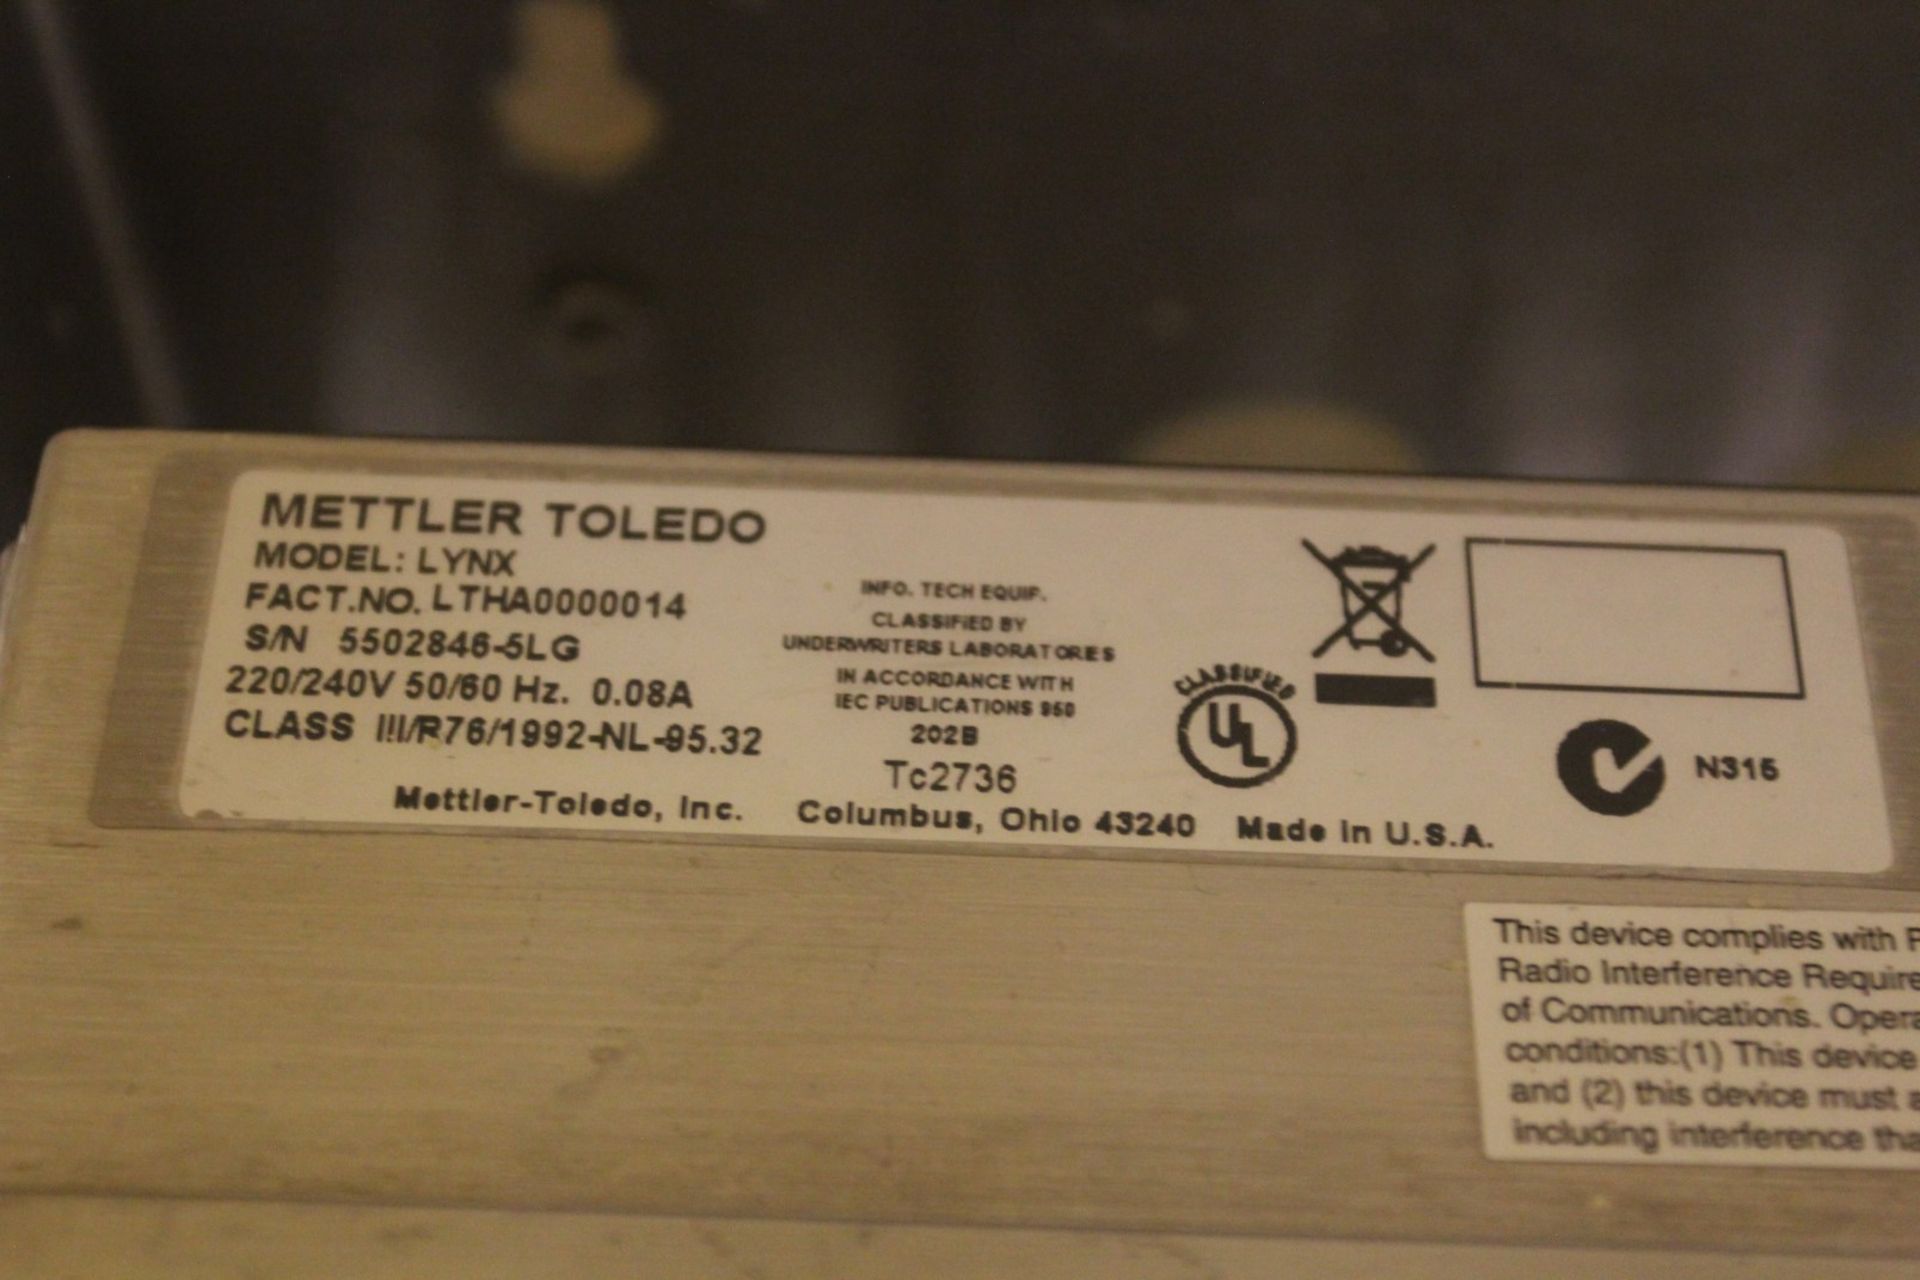 800 kg Stainless Steel Floor Scale w/ Mettler Toledo Lynx Digital Readout, s/n 5502846-5LG - Image 4 of 4